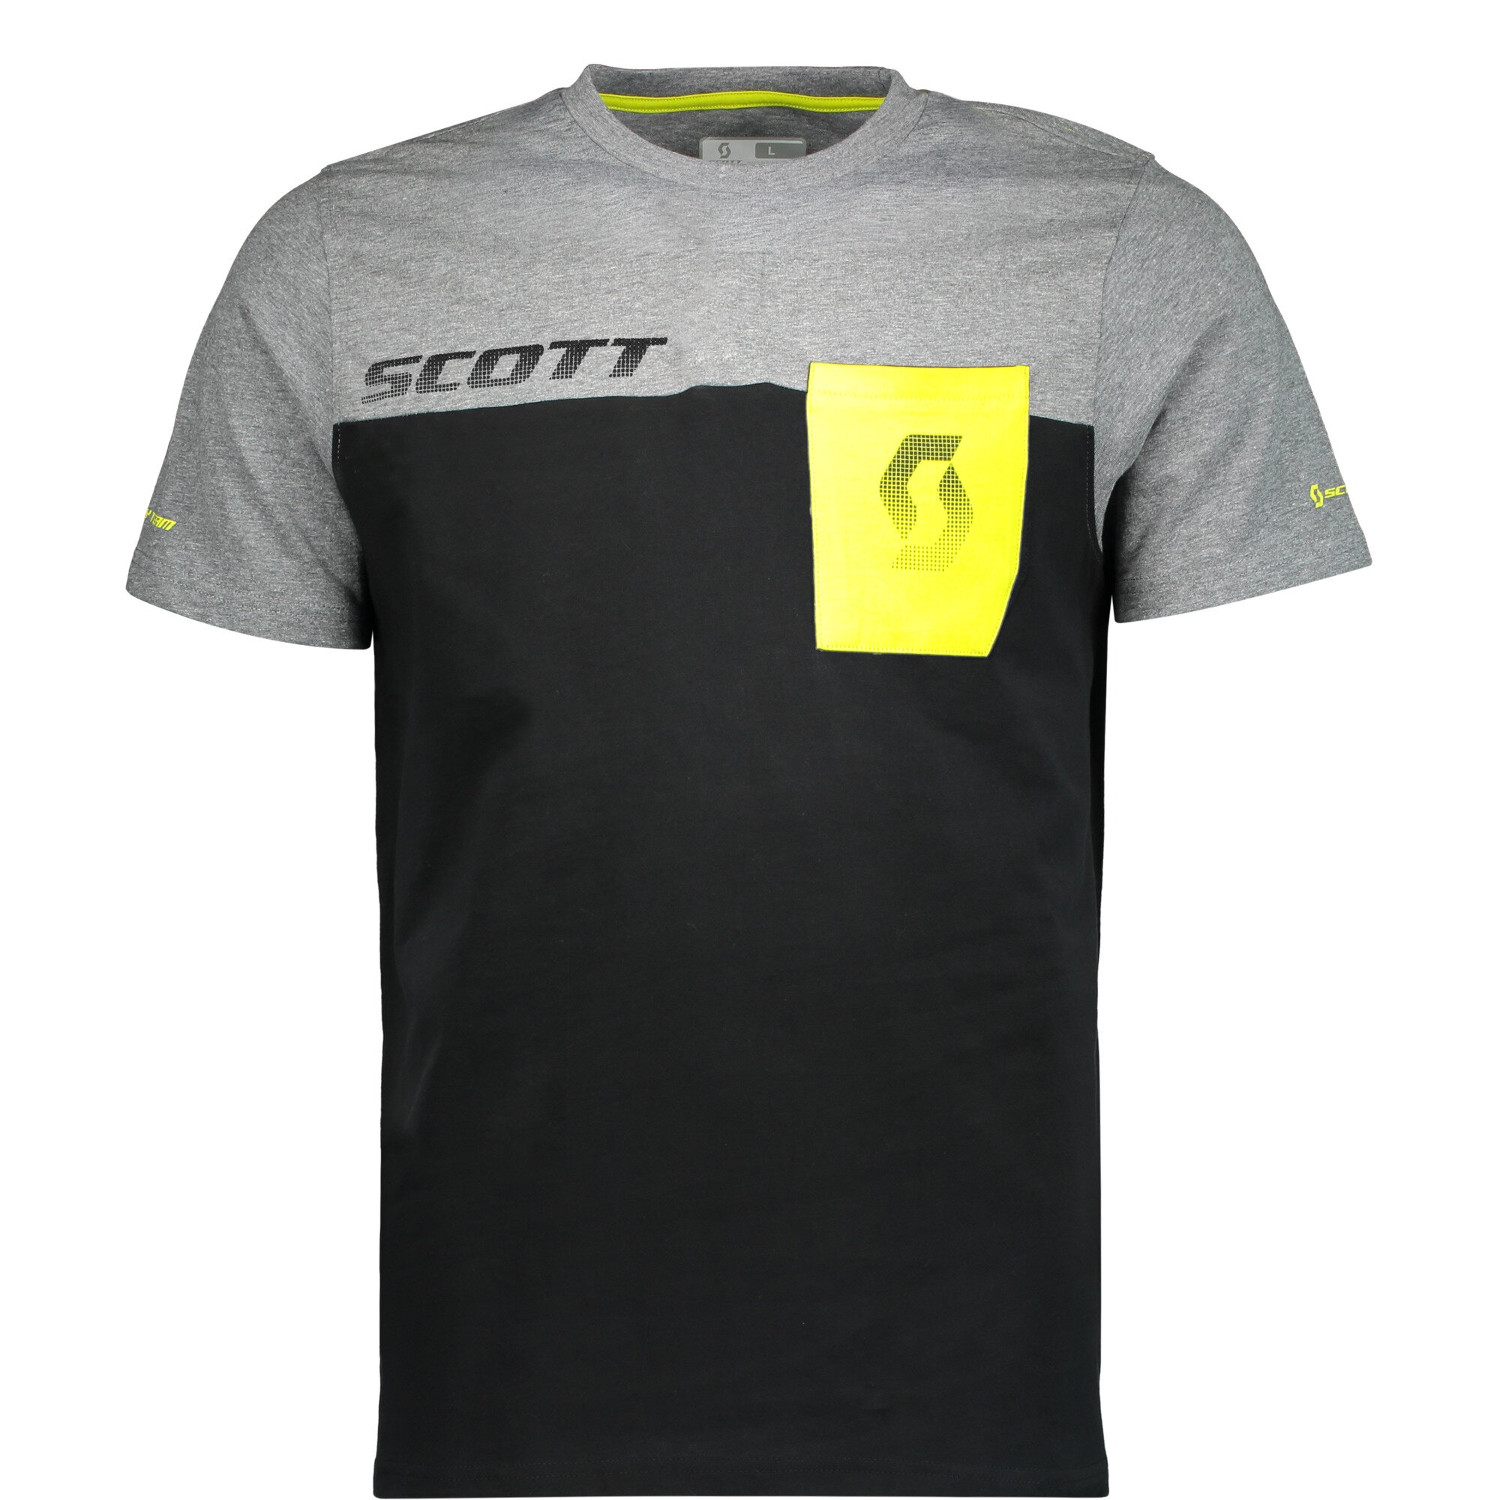 Scott T-Shirt Factory Team CO Schwarz/Dunkelgrau meliert